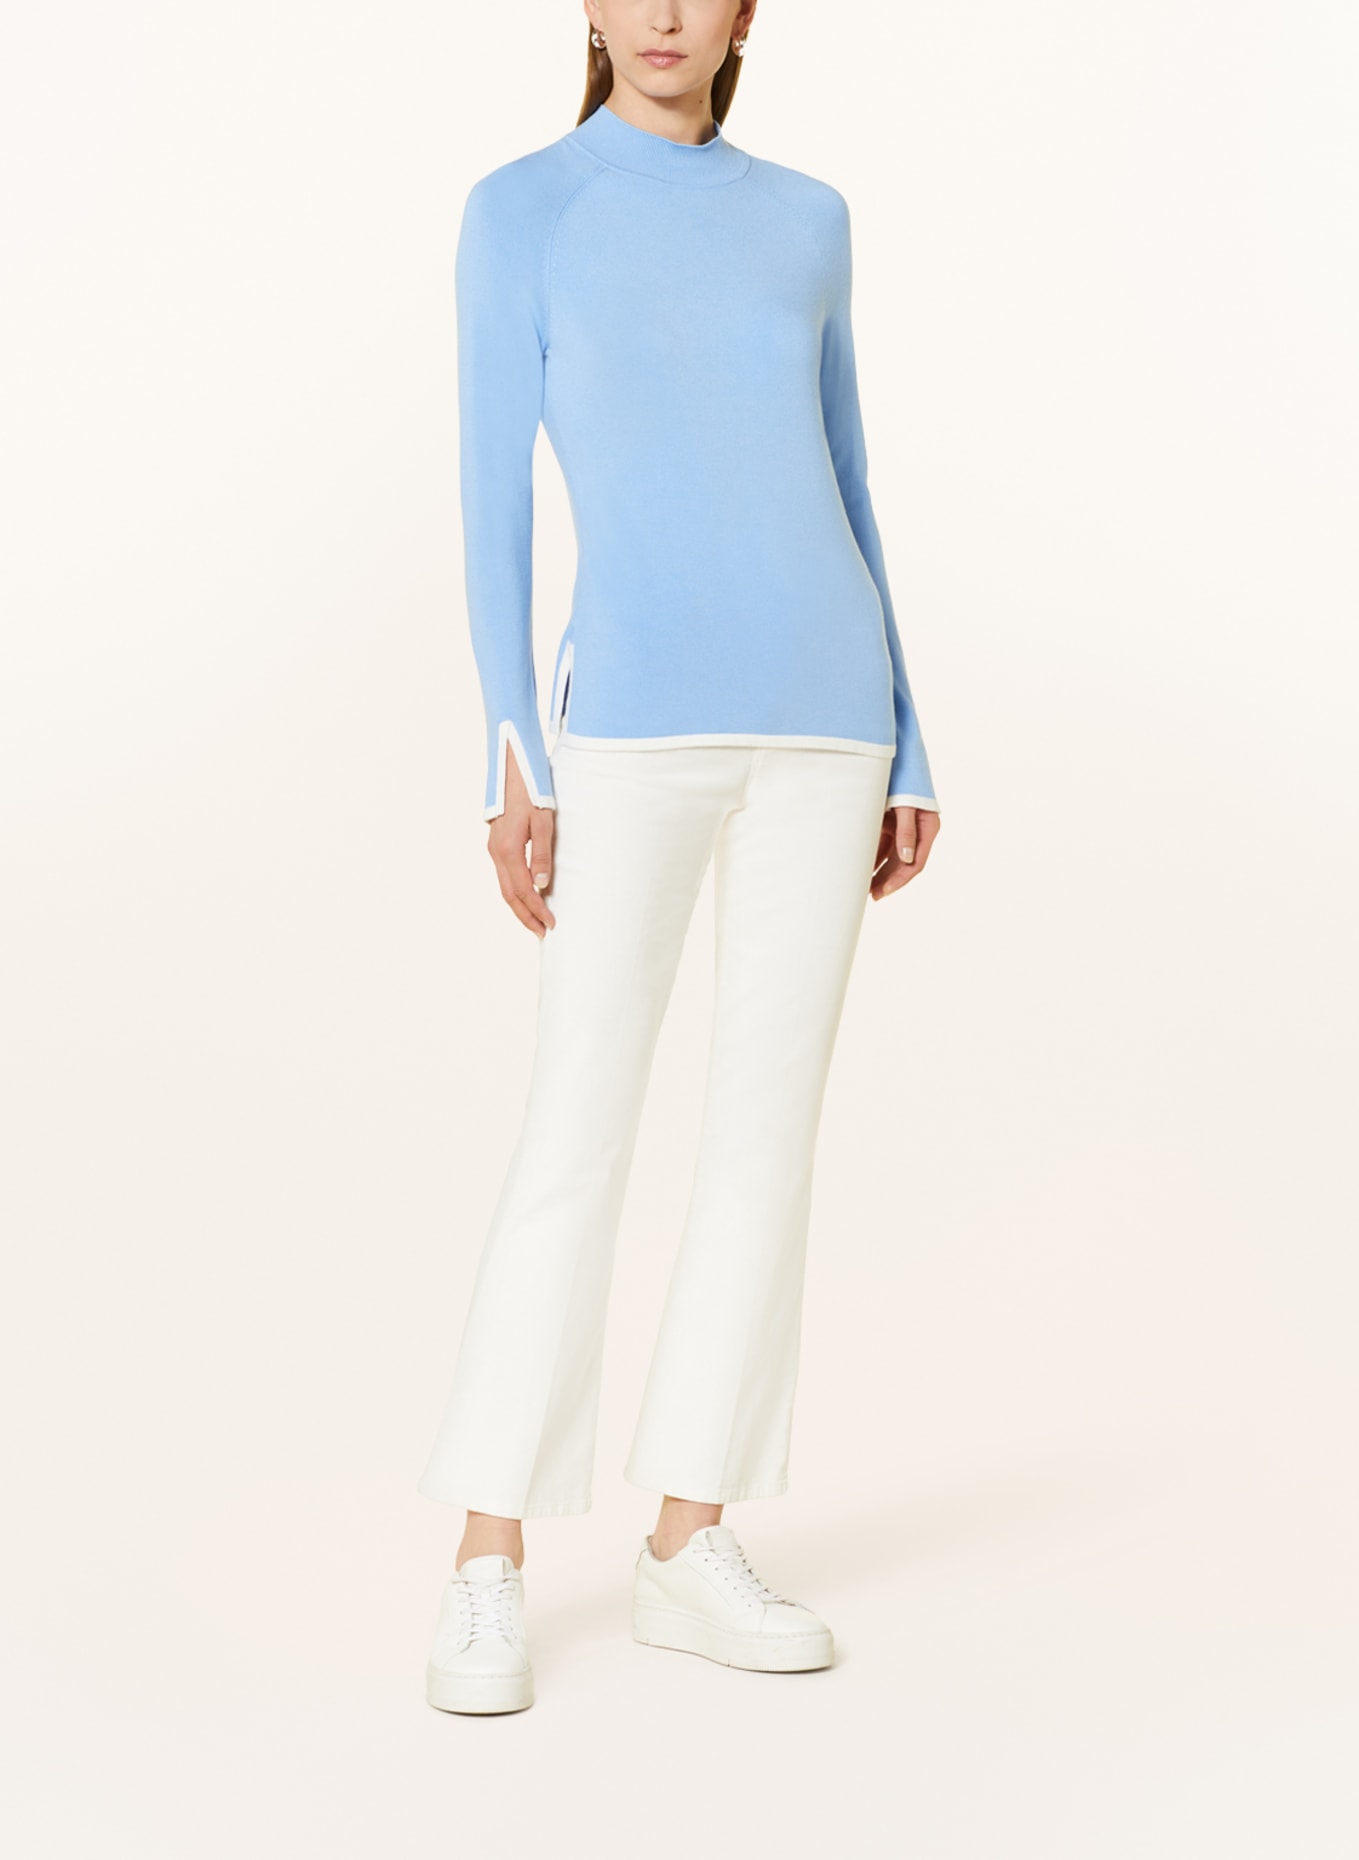 s.Oliver BLACK LABEL Sweater, Color: LIGHT BLUE/ WHITE (Image 2)